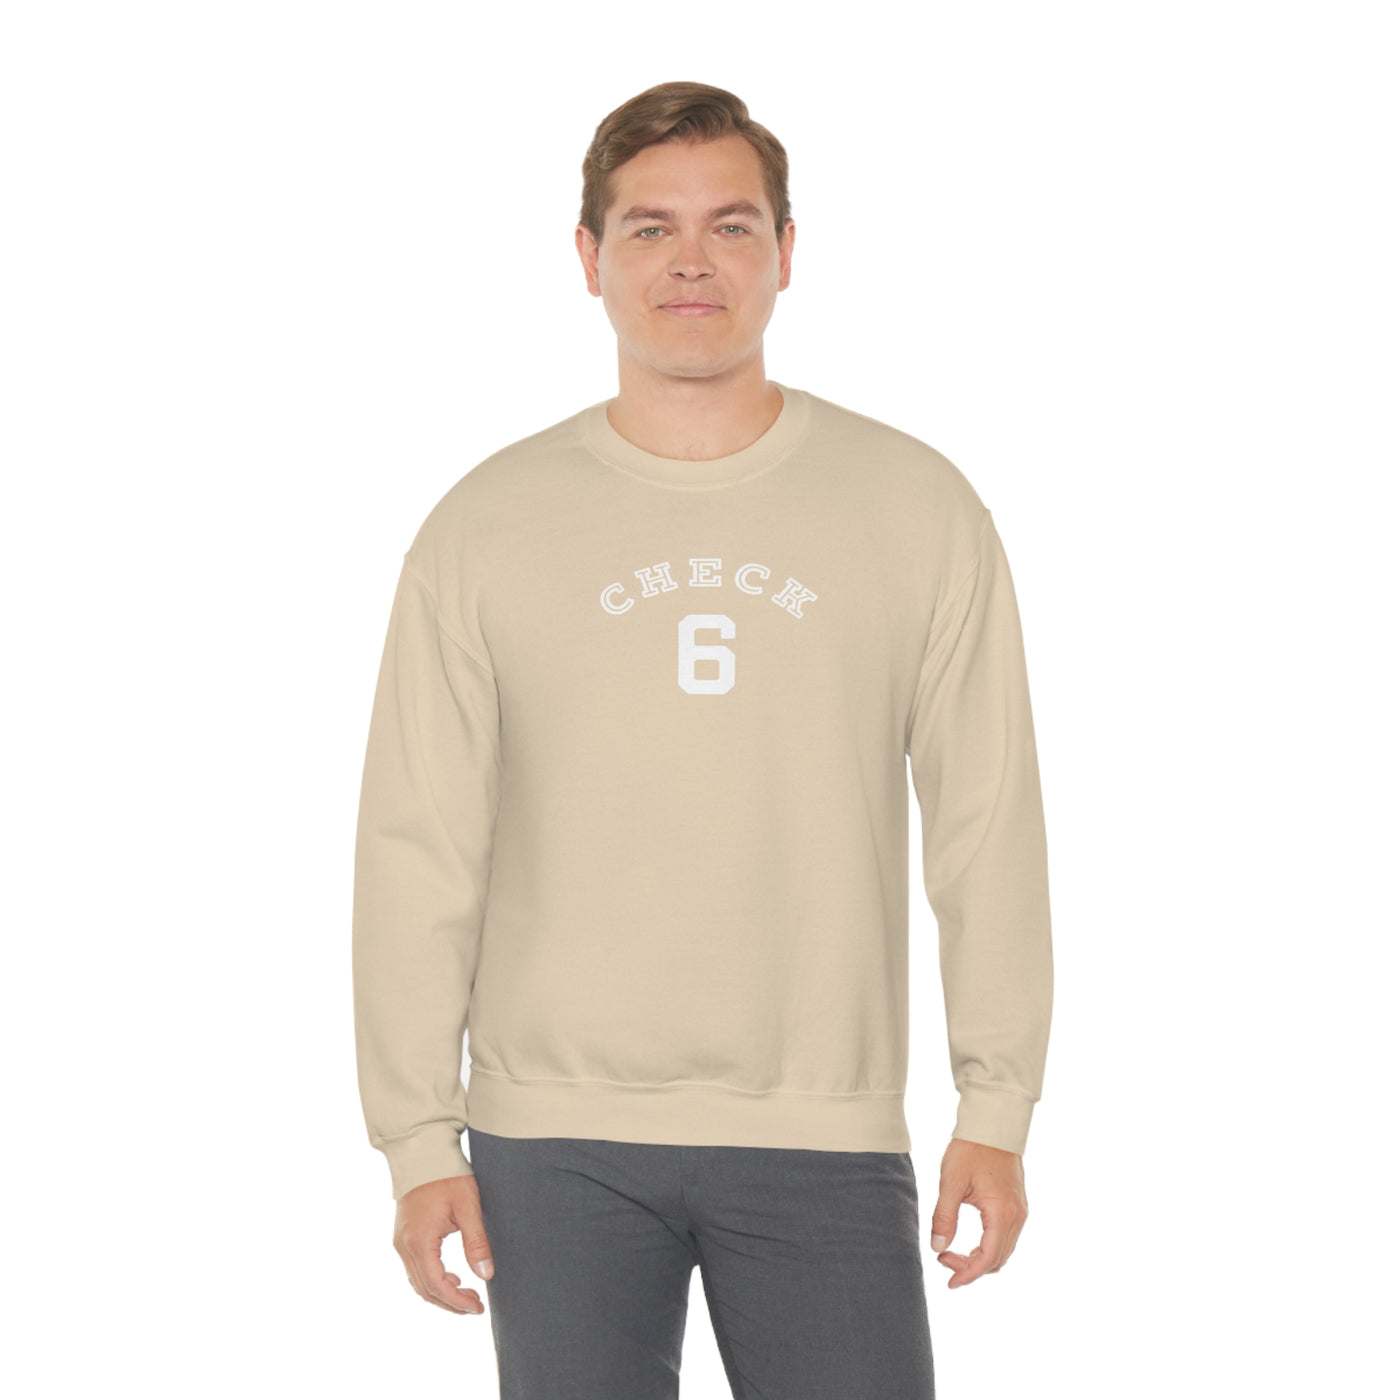 Check Your Six Crewneck Sweatshirt